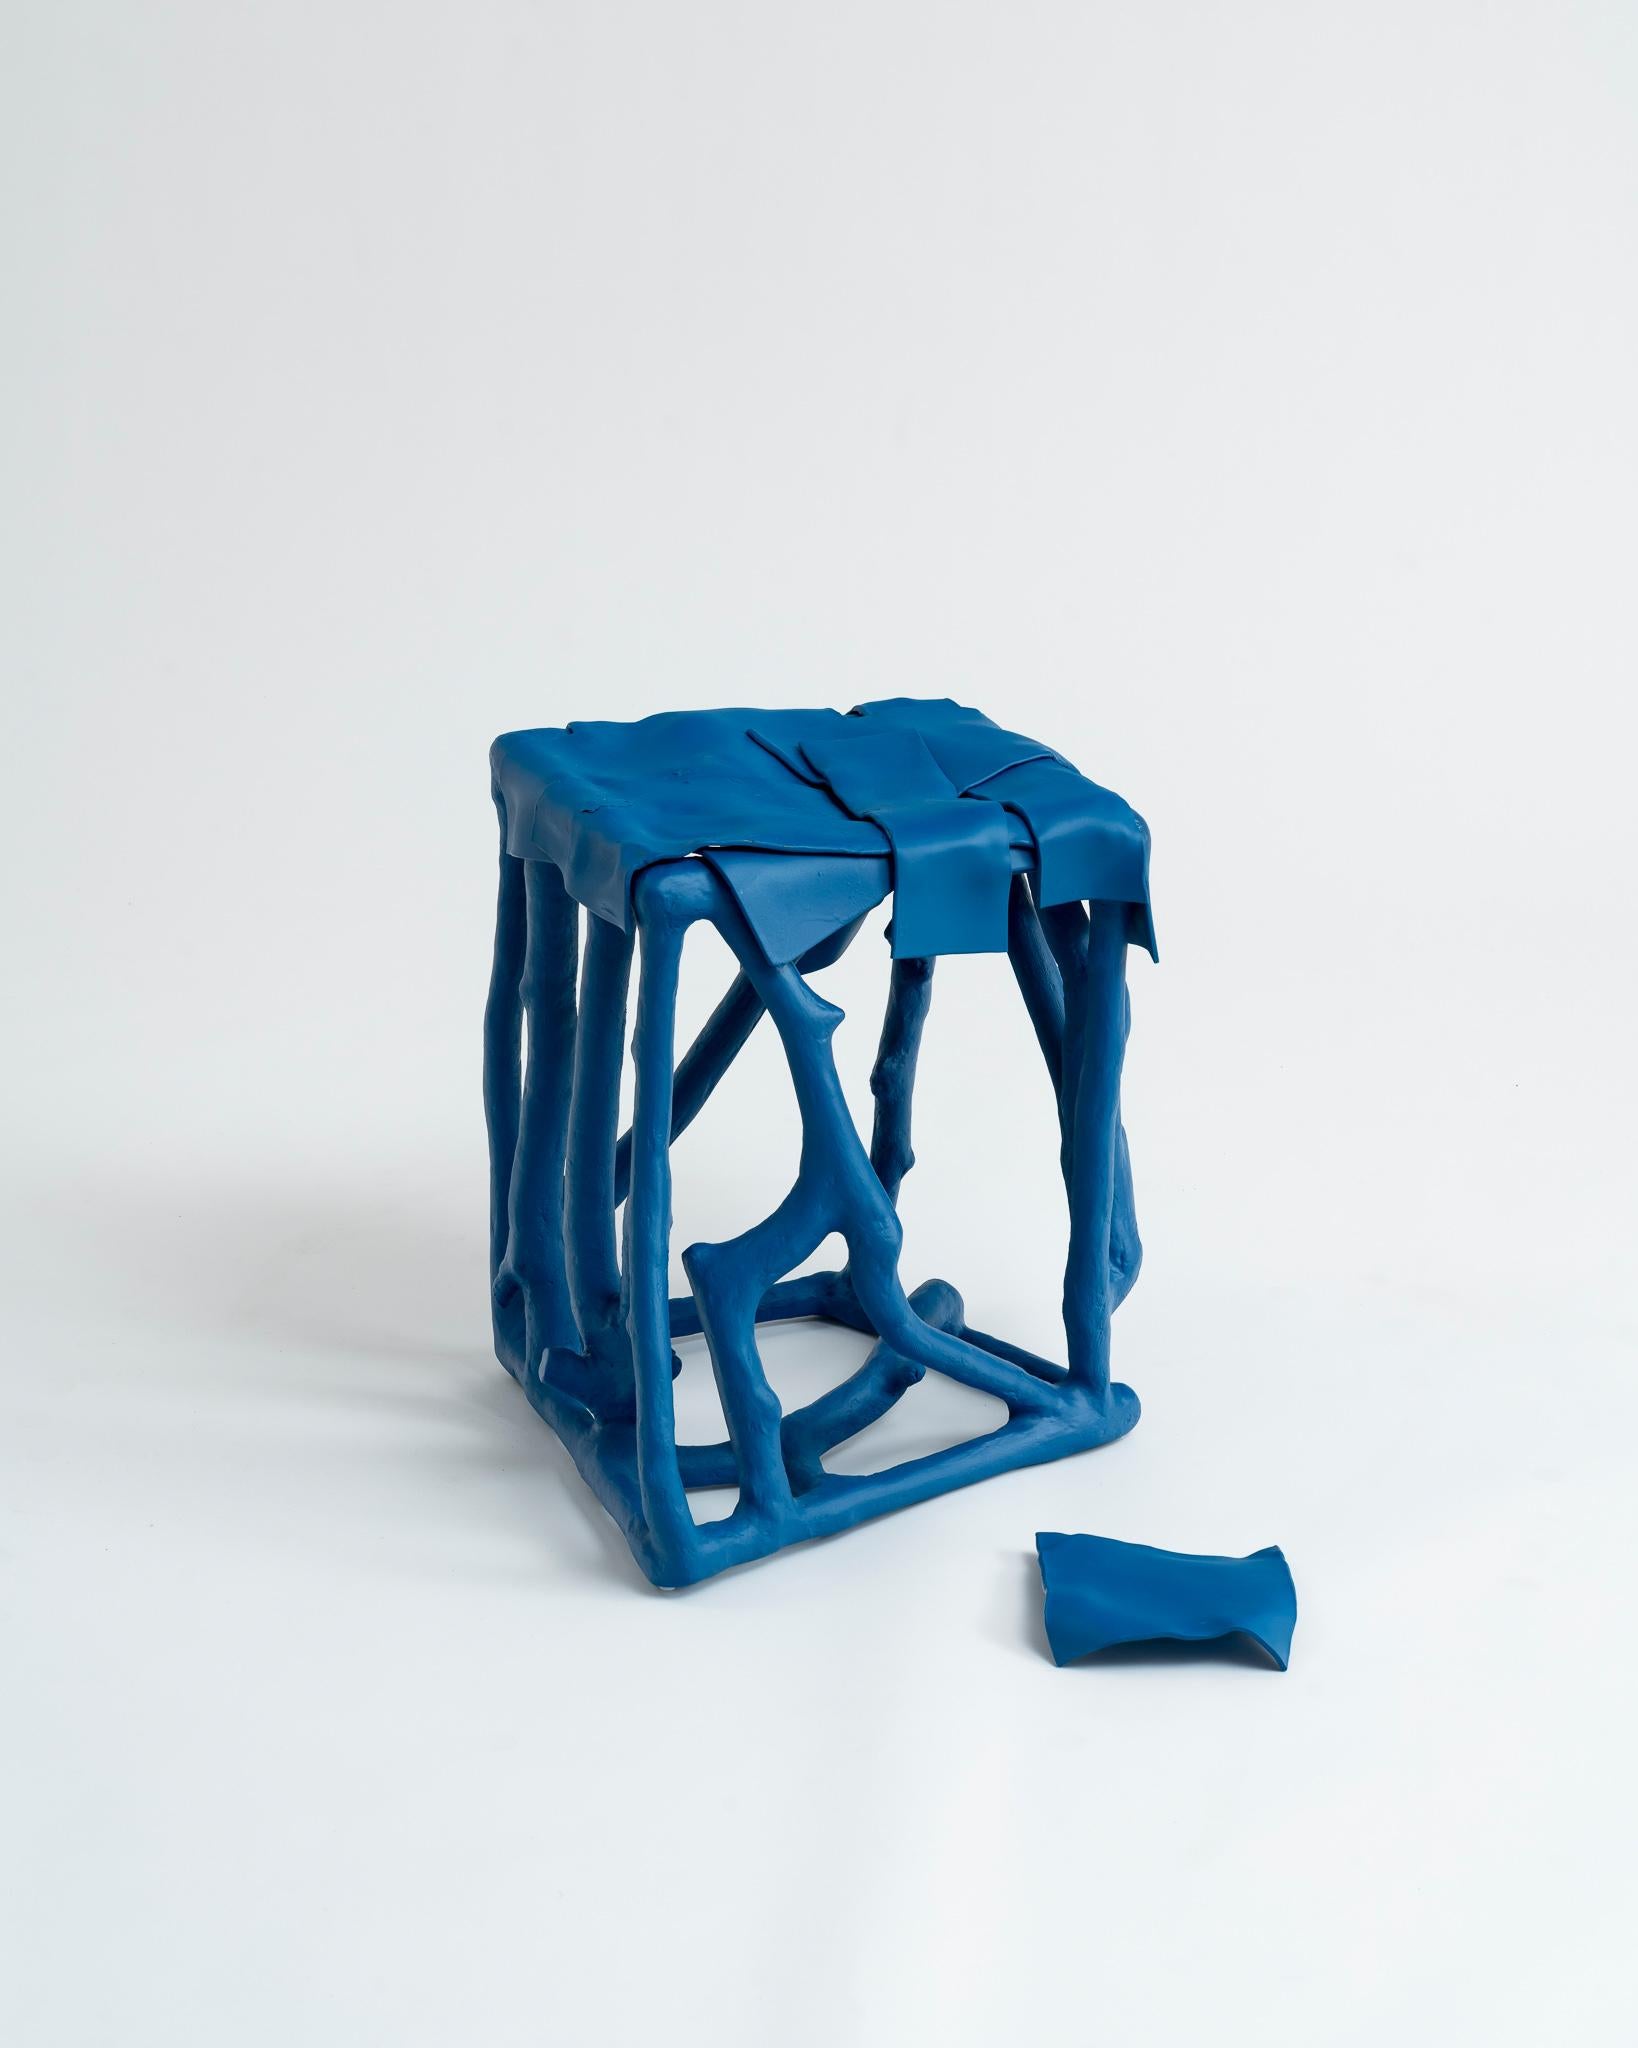 Dieser eklektische, azurblaue, dekorative Akzenttisch oder Hocker ist ein Einzelstück des französischen multidisziplinären Künstlers und Designers Louis Bressolles. Das völlig einzigartige skulpturale Objekt besteht aus ineinander greifenden Stücken